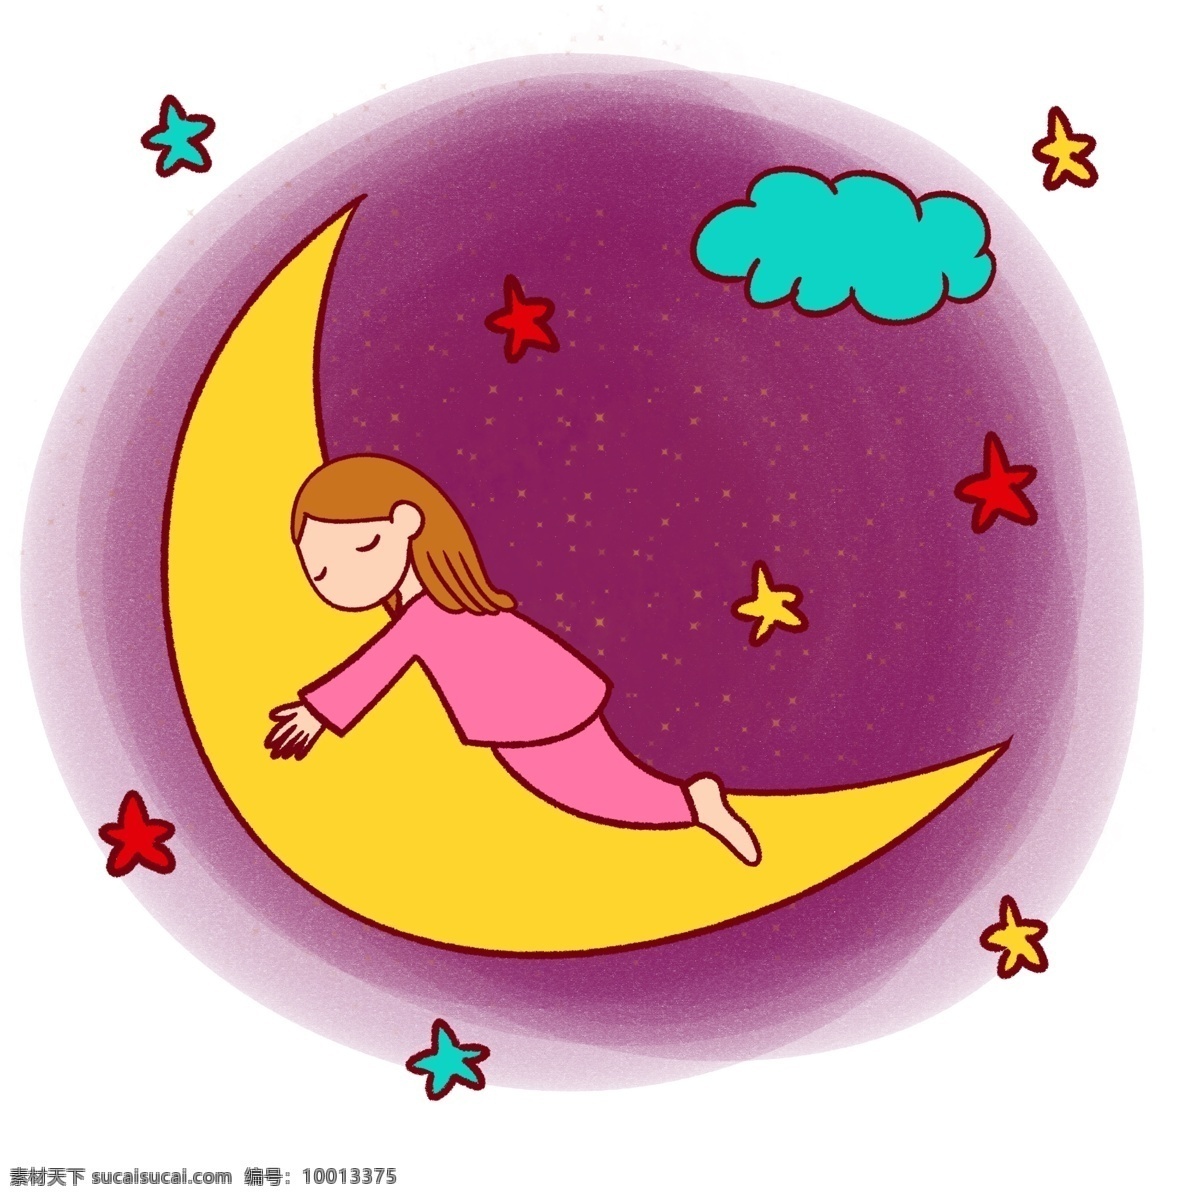 手绘 卡通 可爱 梦幻 童话 月亮 小女孩 矢量 免抠 儿童故事 云朵 梦境 睡衣 星星